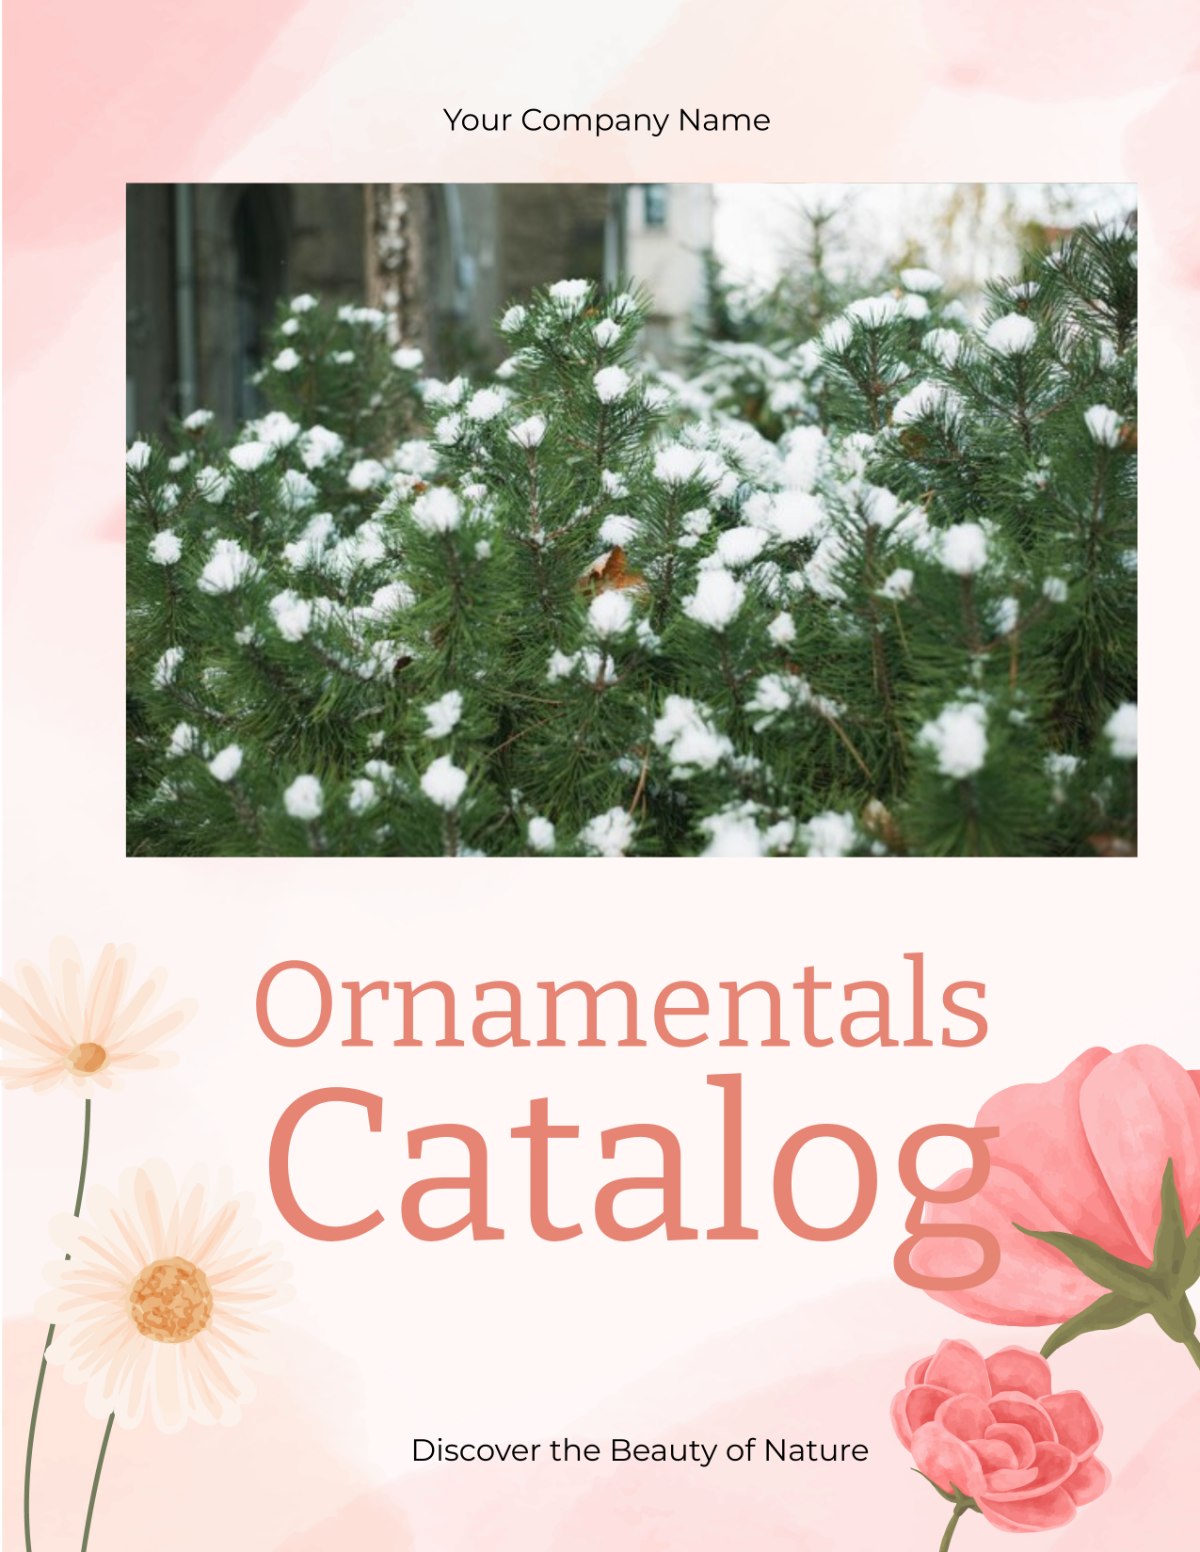 Ornamentals Catalog